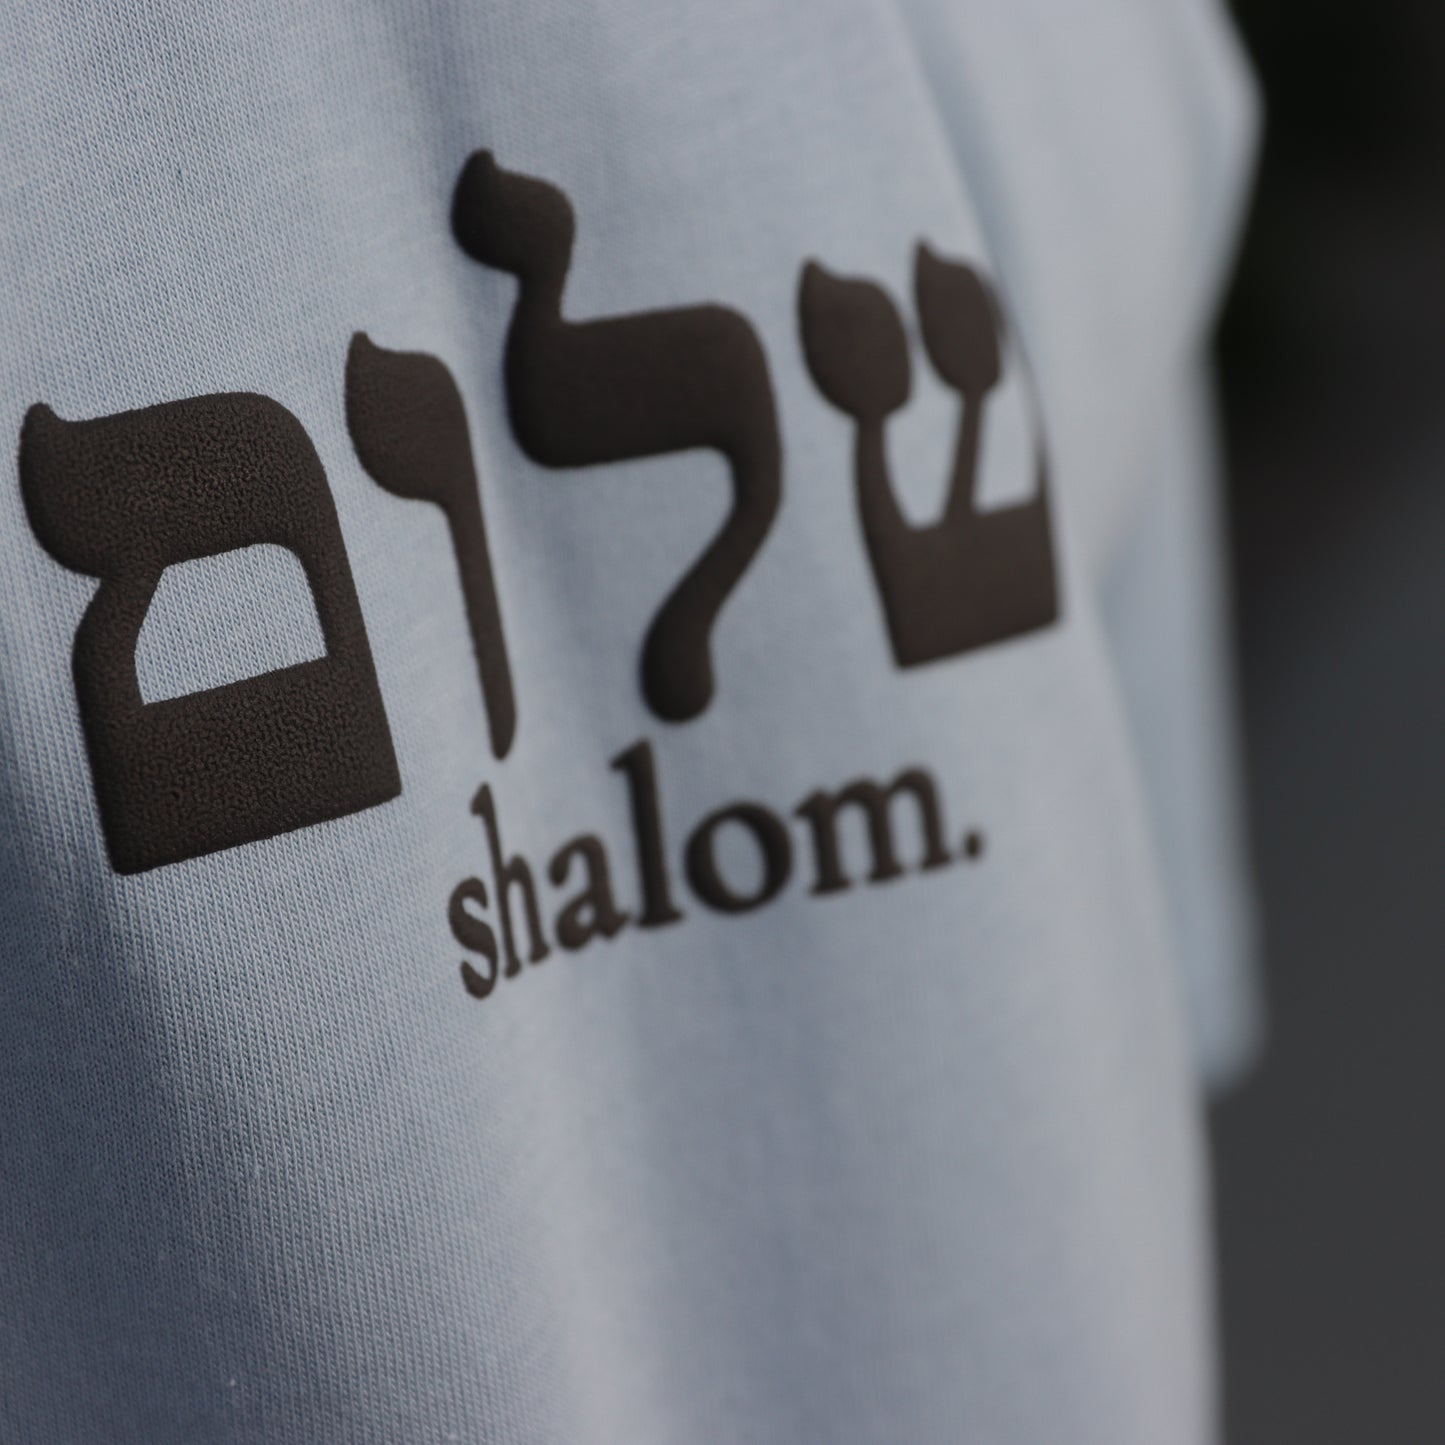 Shalom.